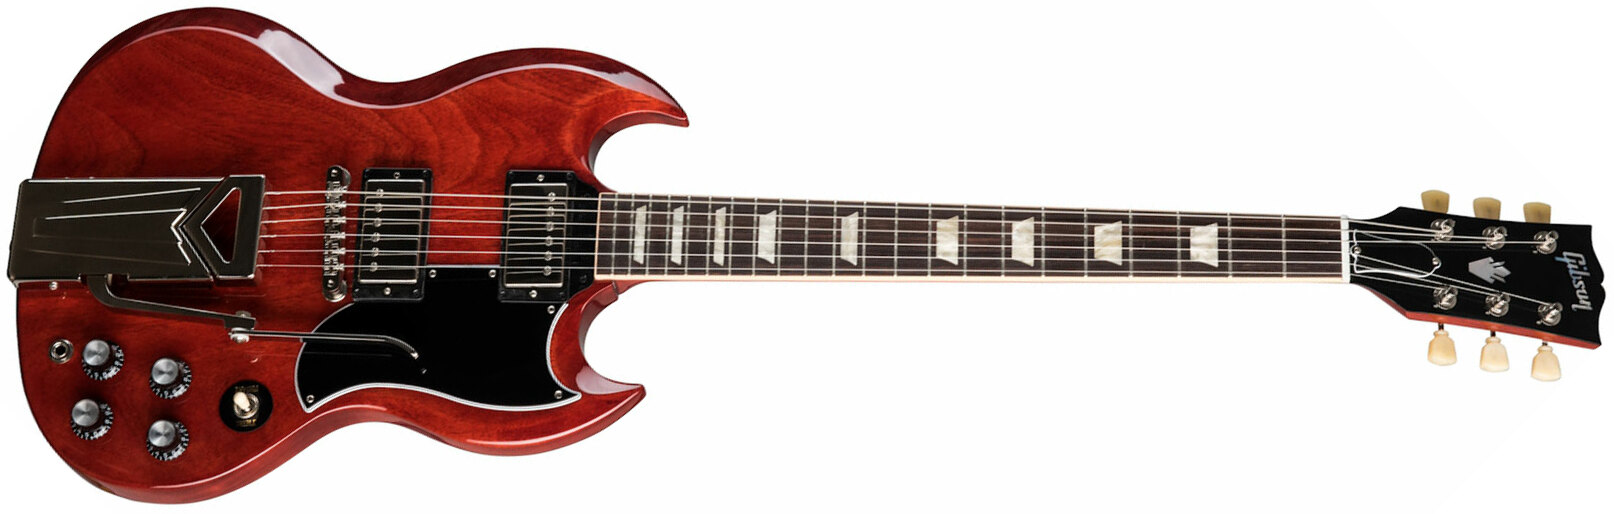 Gibson Sg Standard '61 Sideways Vibrola Original 2h Ht Rw - Vintage Cherry - Retro-rock elektrische gitaar - Main picture